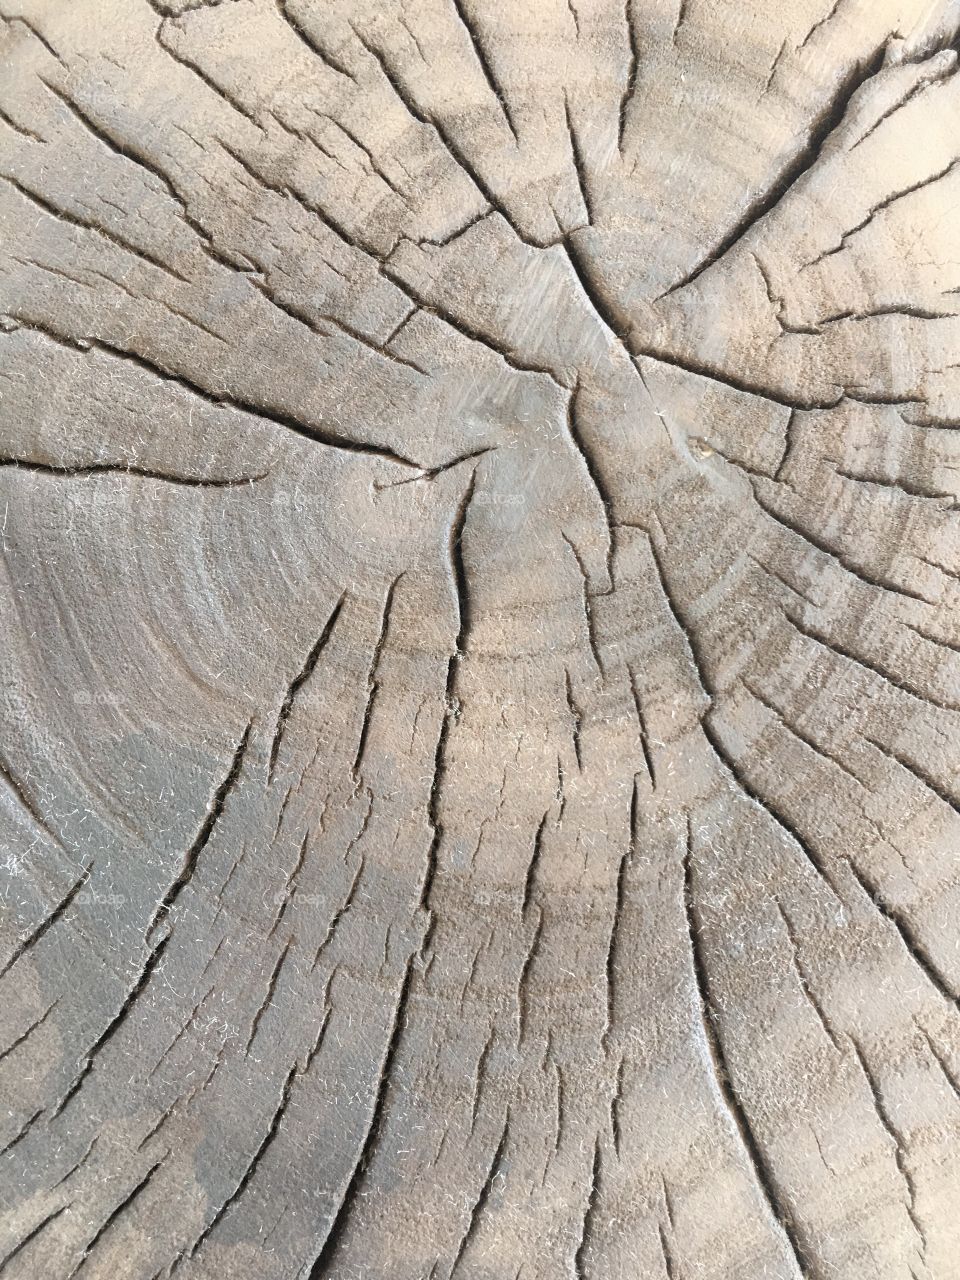 Wood cut